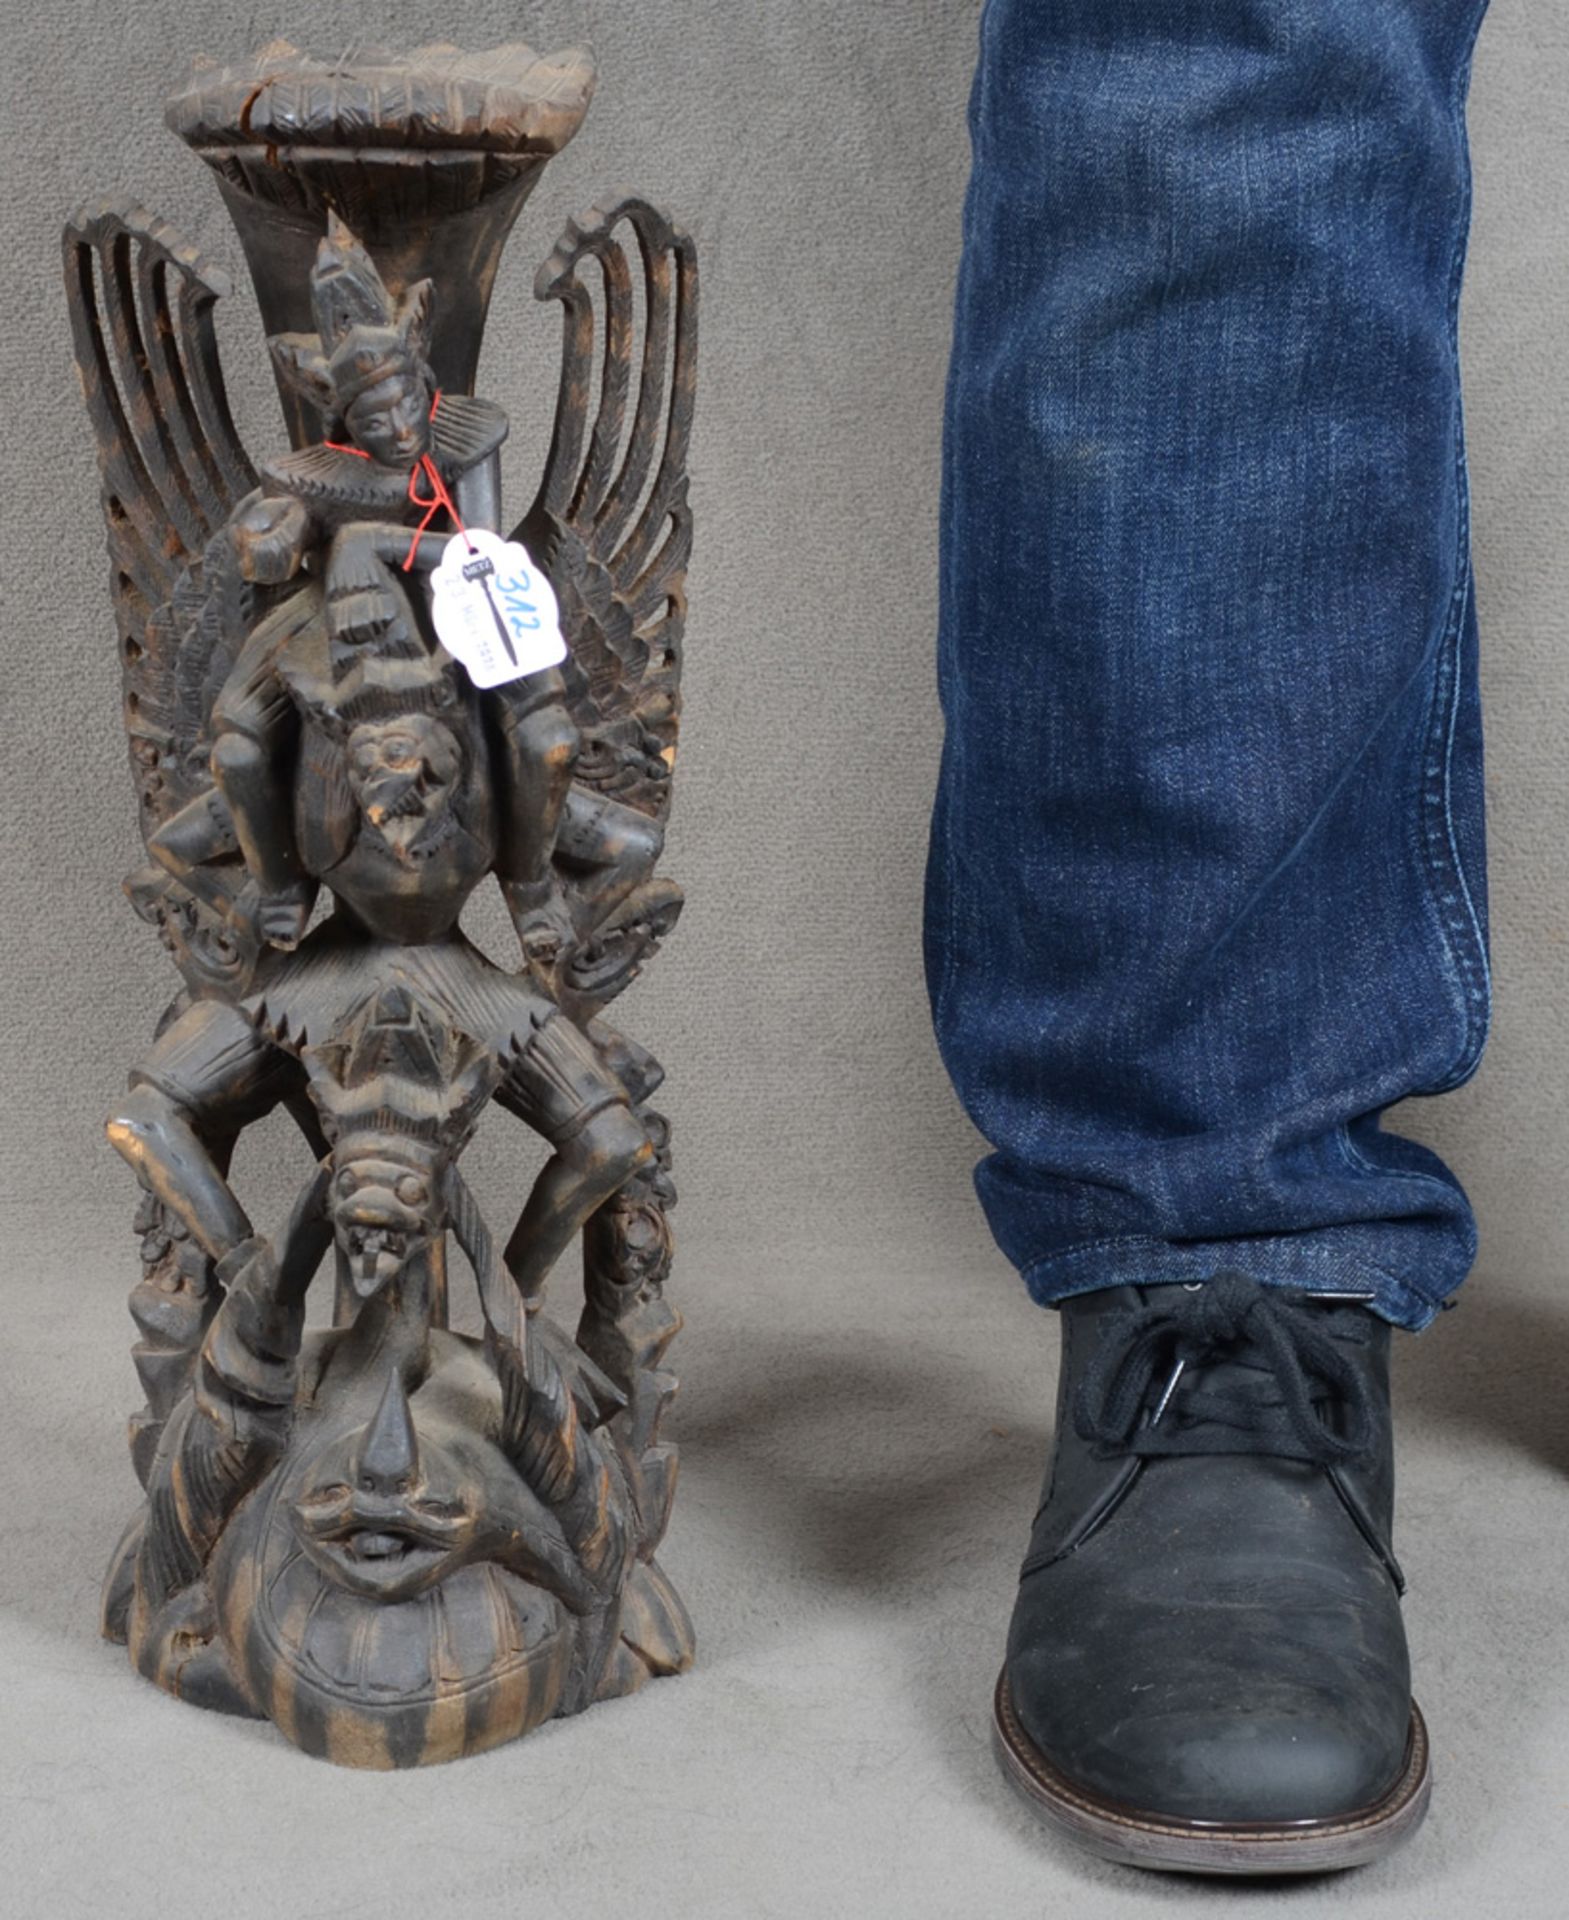 Vishnu auf Garuda. Asien. Massivholz, geschnitzt, H=42 cm. (Spannungsriss, best.)